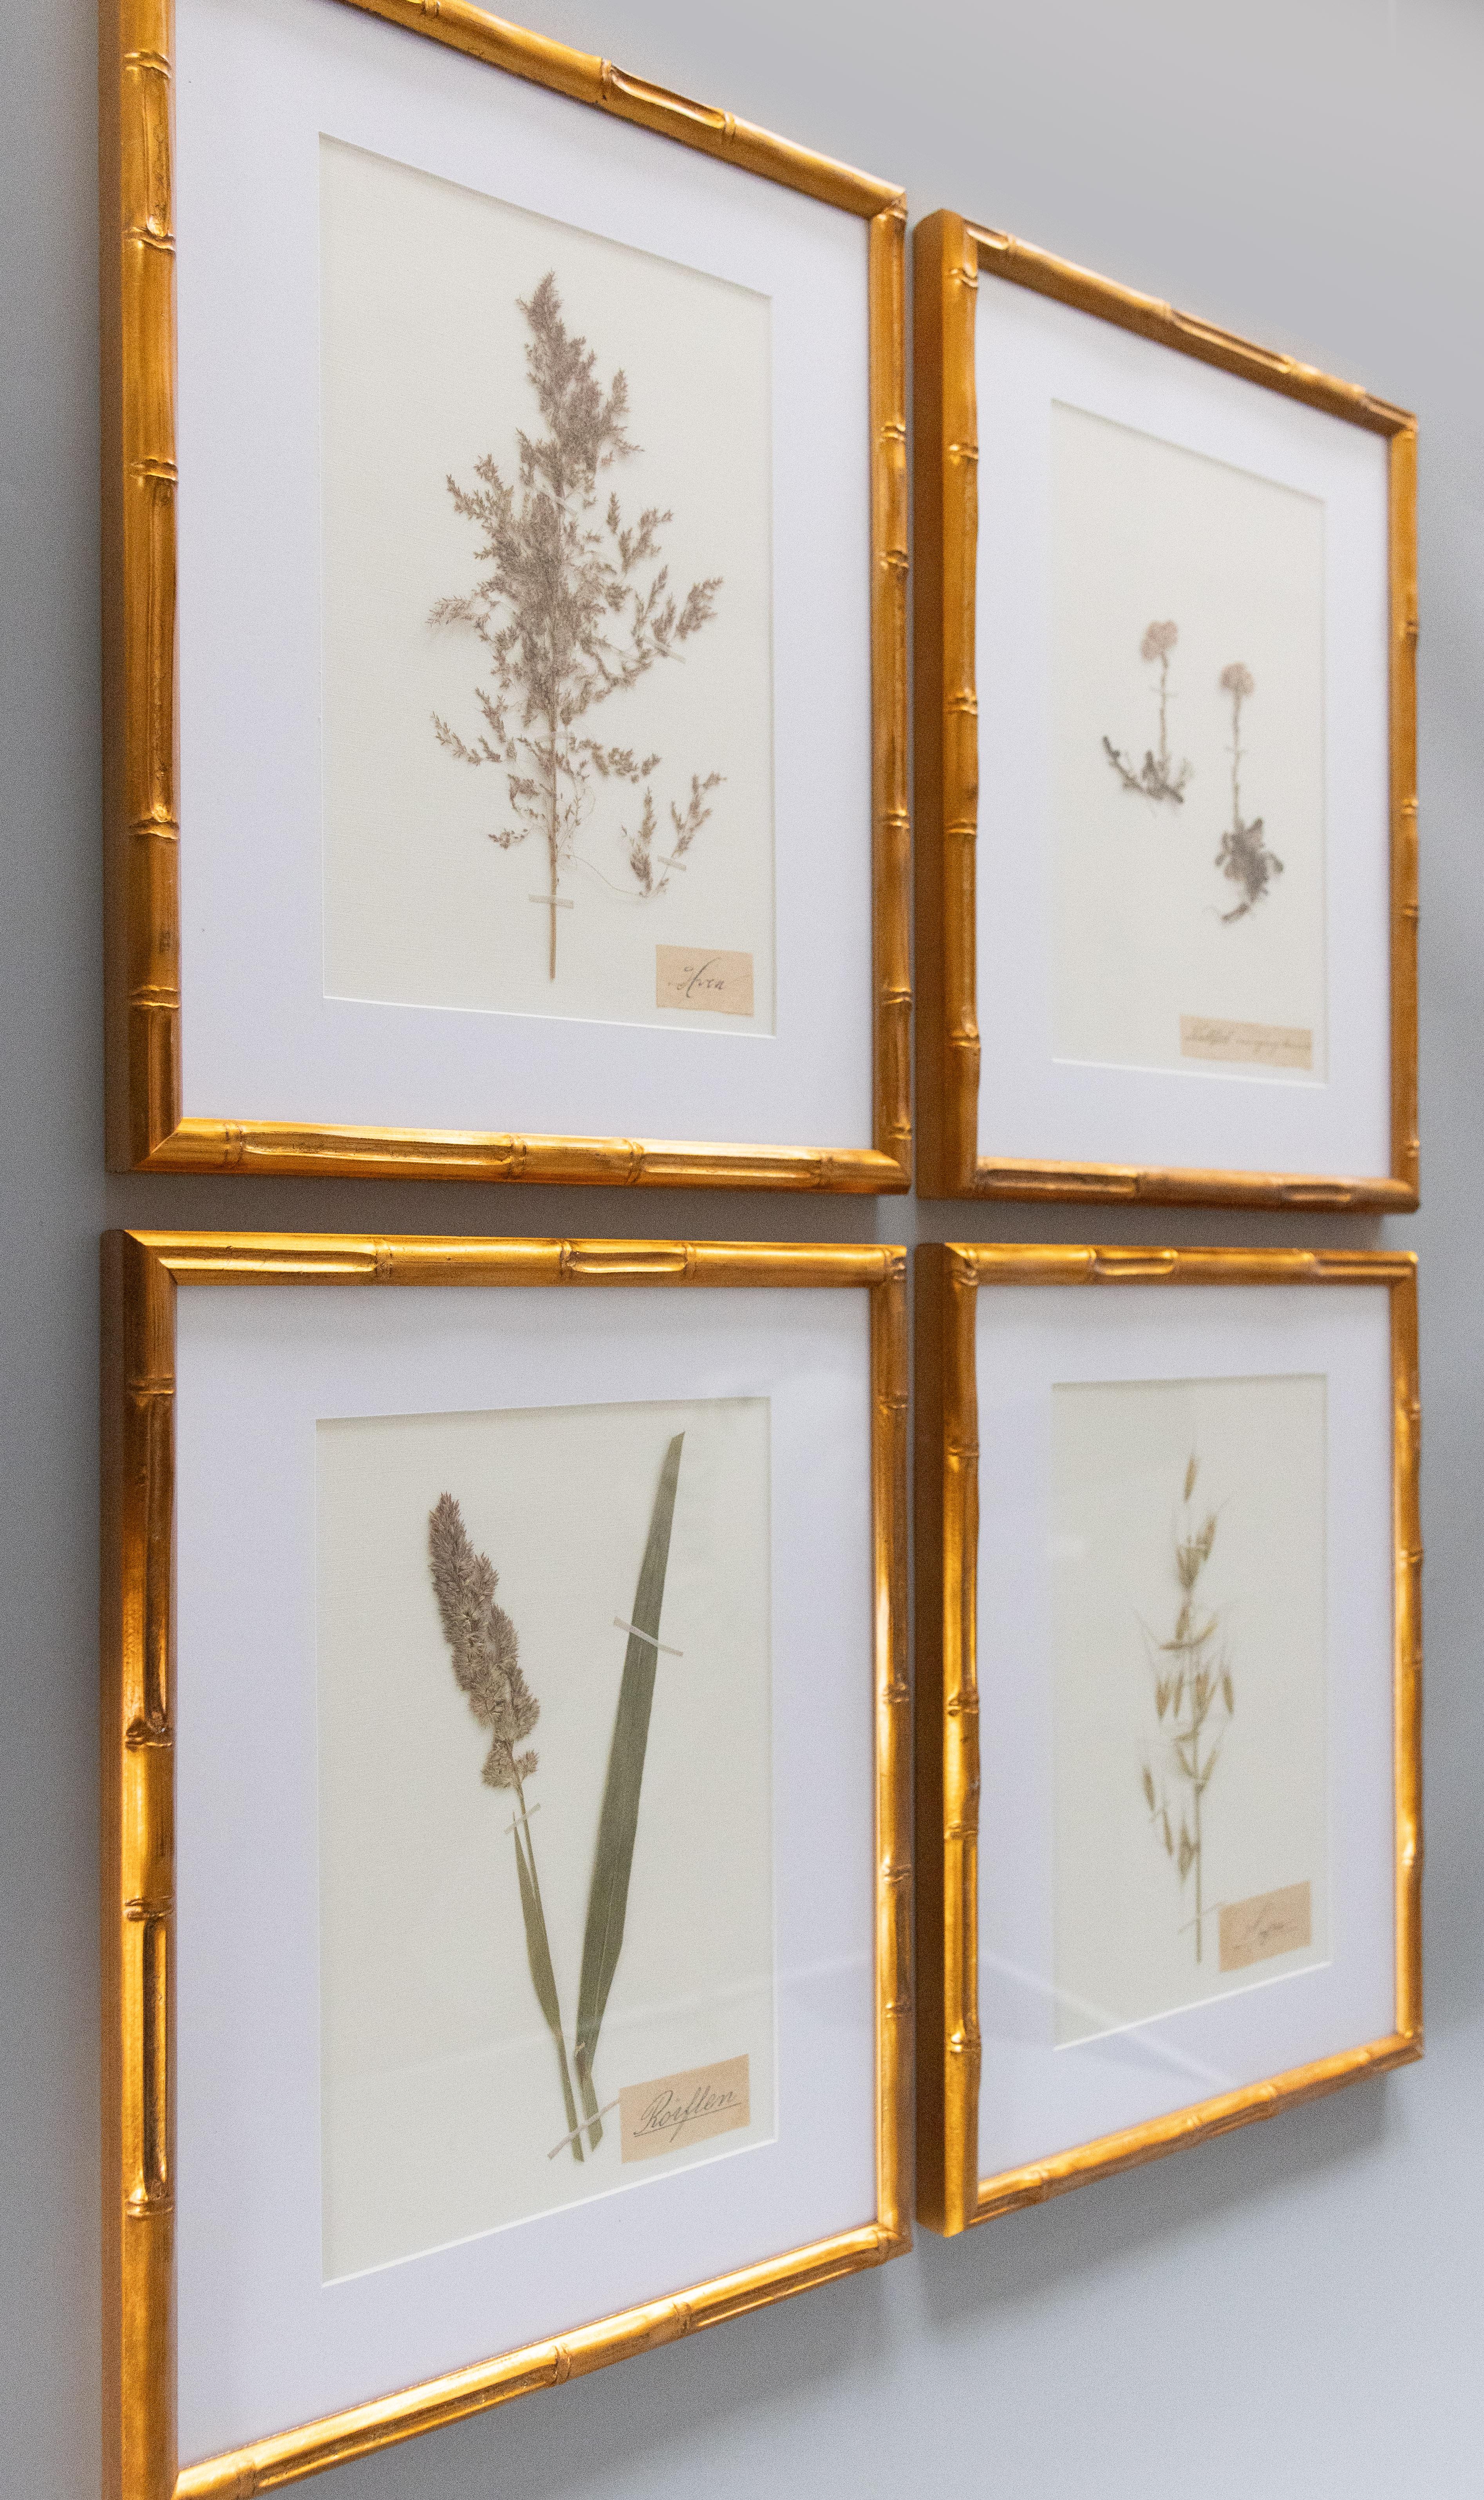 Schöne gerahmte antike Herbarium Blumenproben, um 1890 gesammelt. Handgeschriebene Namen in schöner schwedischer Schrift. Zu den Exemplaren gehören Katzenpfötchen, Flughafer und andere. Präsentiert in einem goldenen Rahmen aus Bambusimitat,